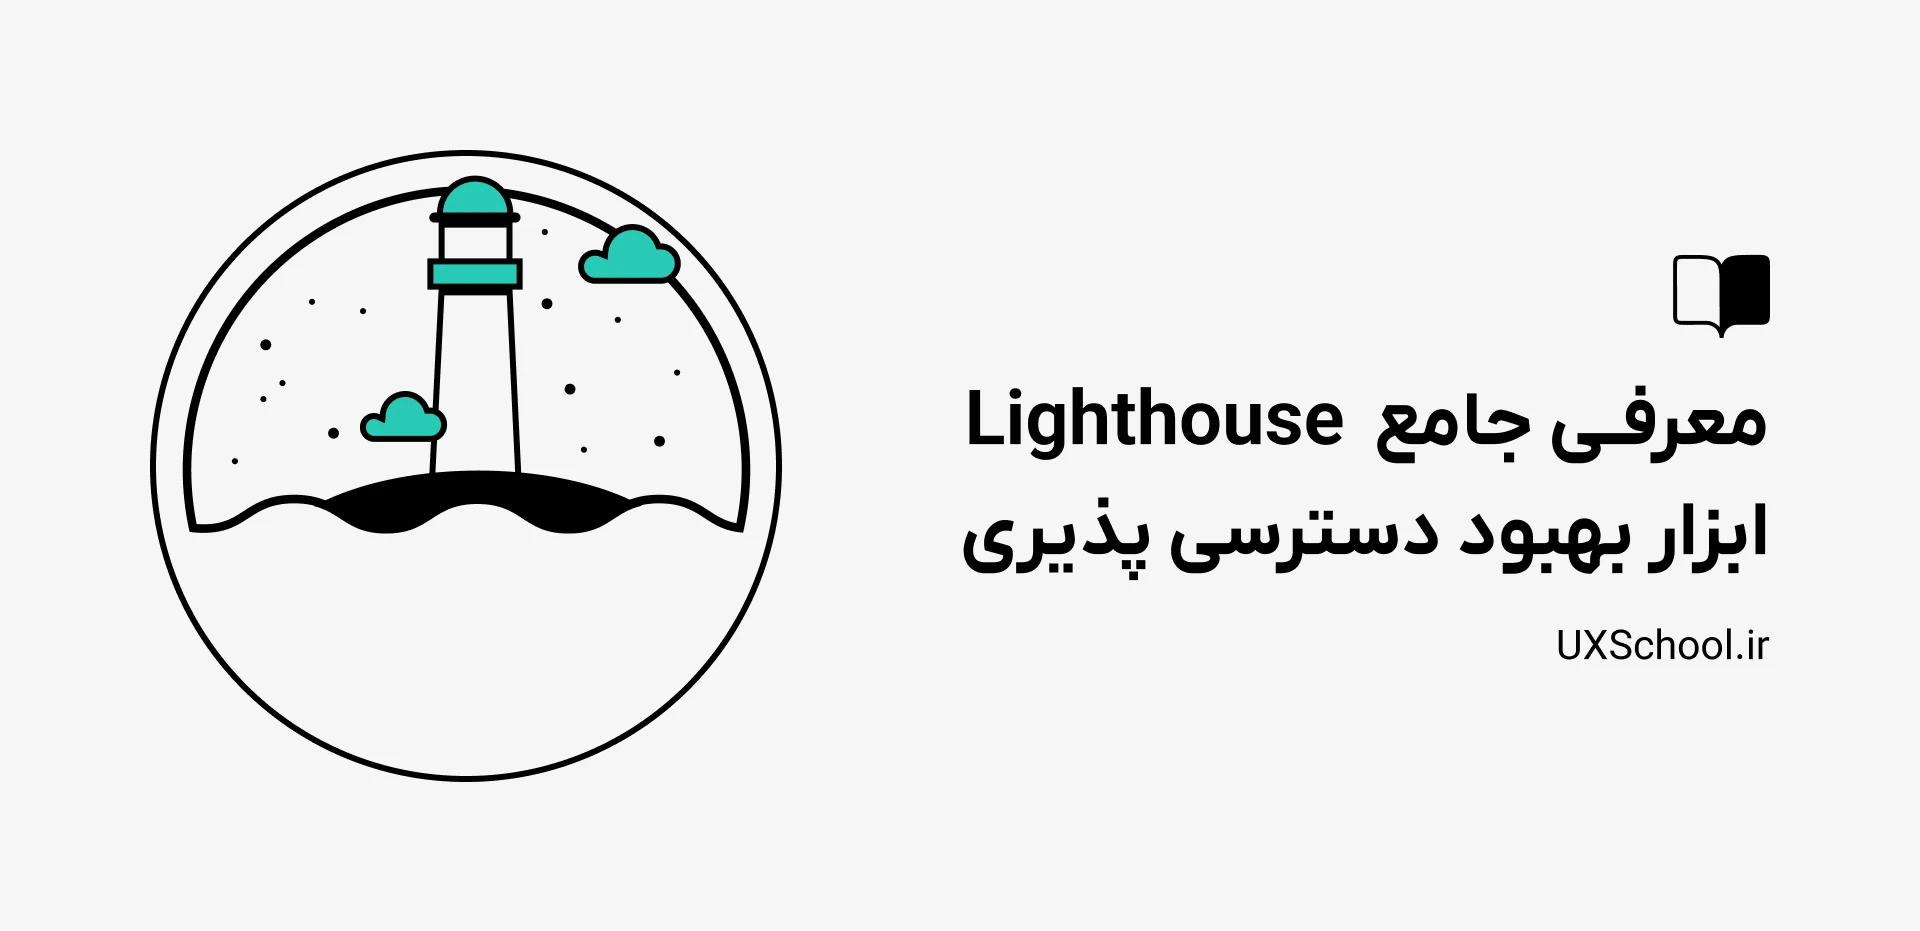 معرفی Lighthouse ابزار بهبود دسترسی پذیری